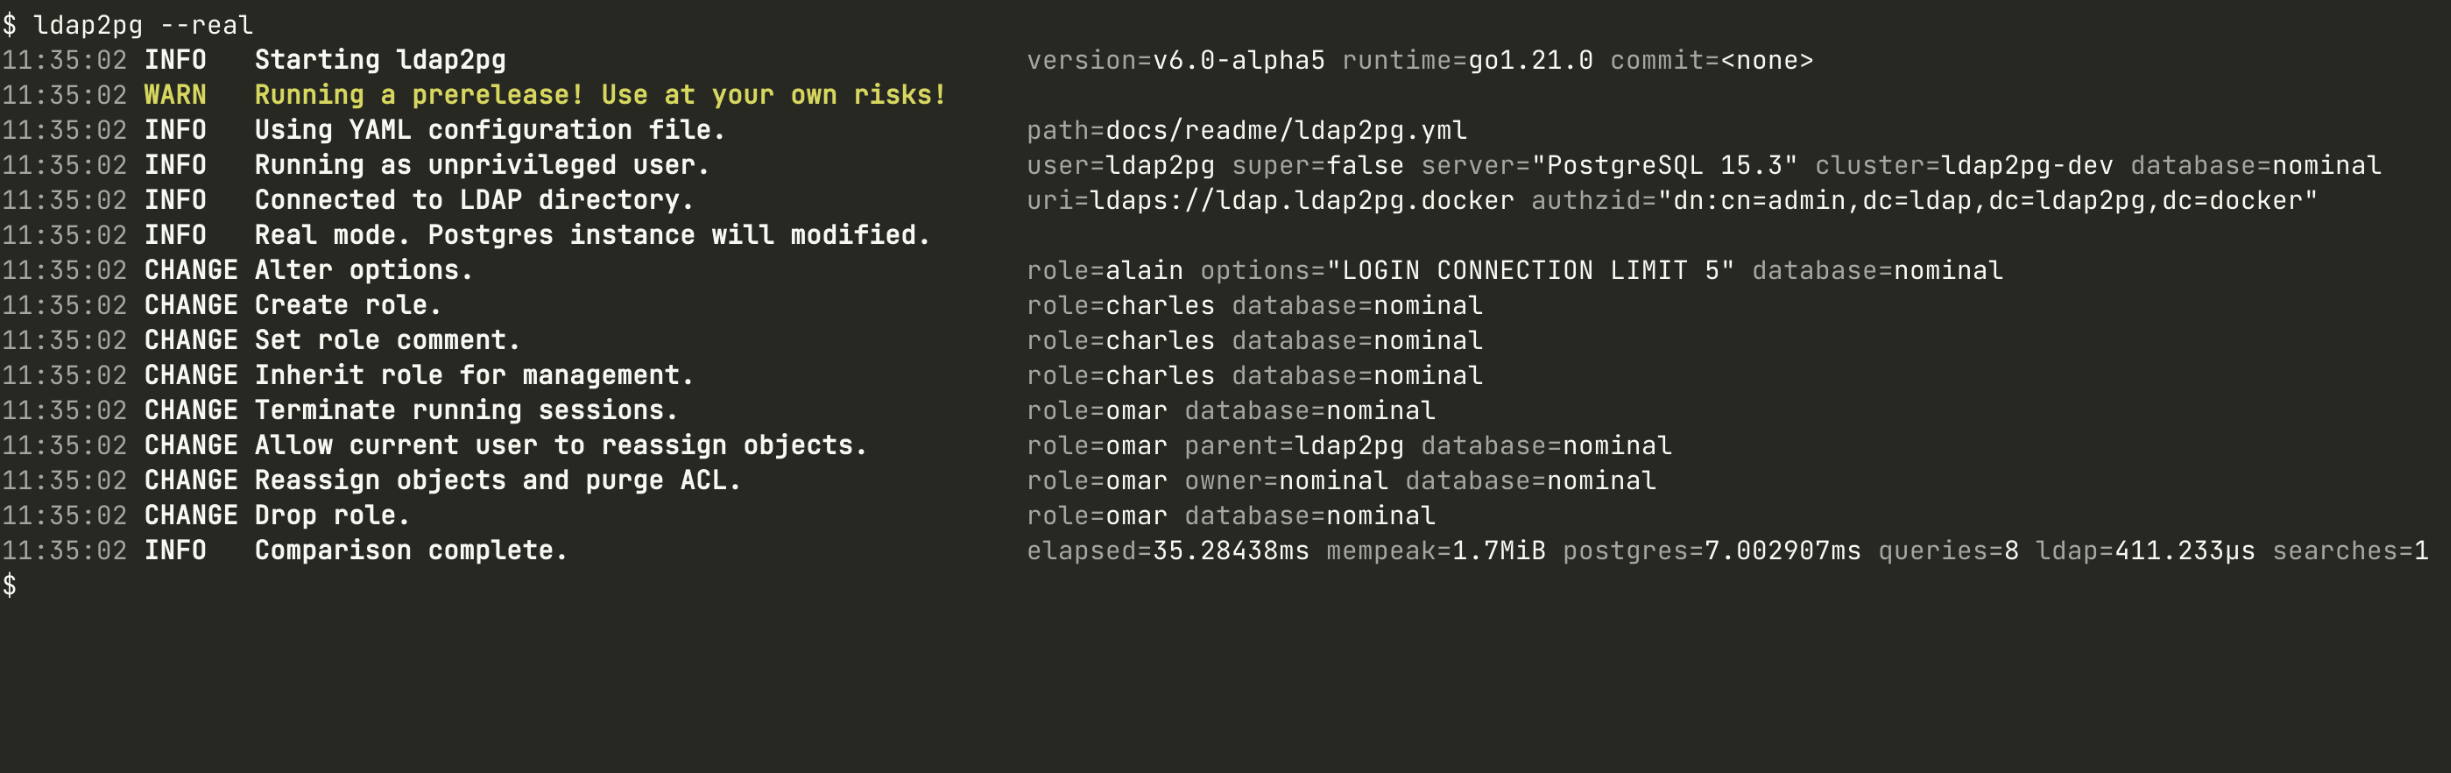 Screenshot of ldap2pg running.